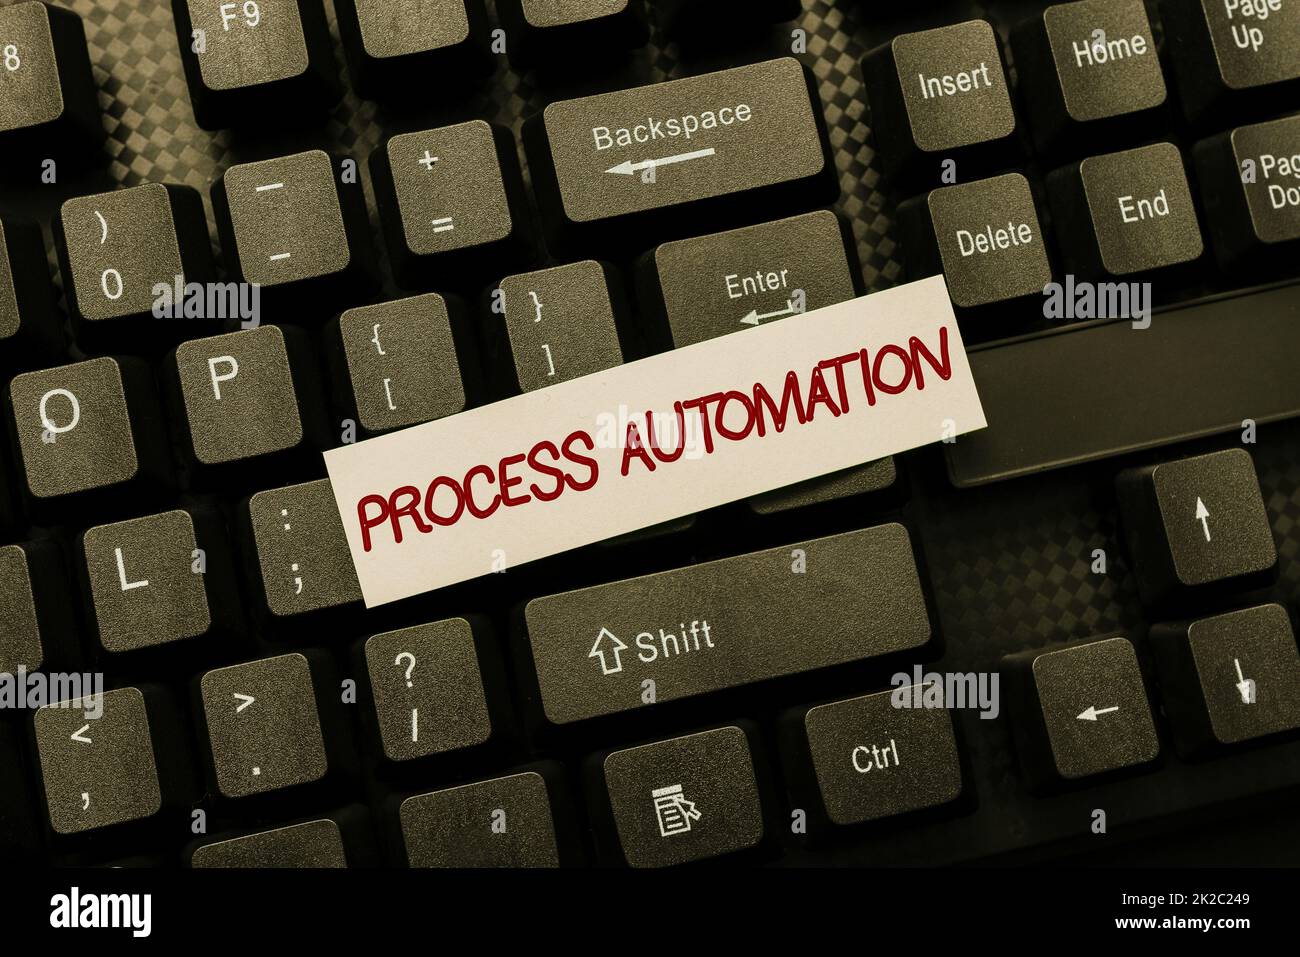 Légende présentant Process Automation. Concept signification transformation robotique rationalisée pour éviter la redondance saisie de nouveaux codes de programmation, saisie de courtes histoires émotionnelles Banque D'Images